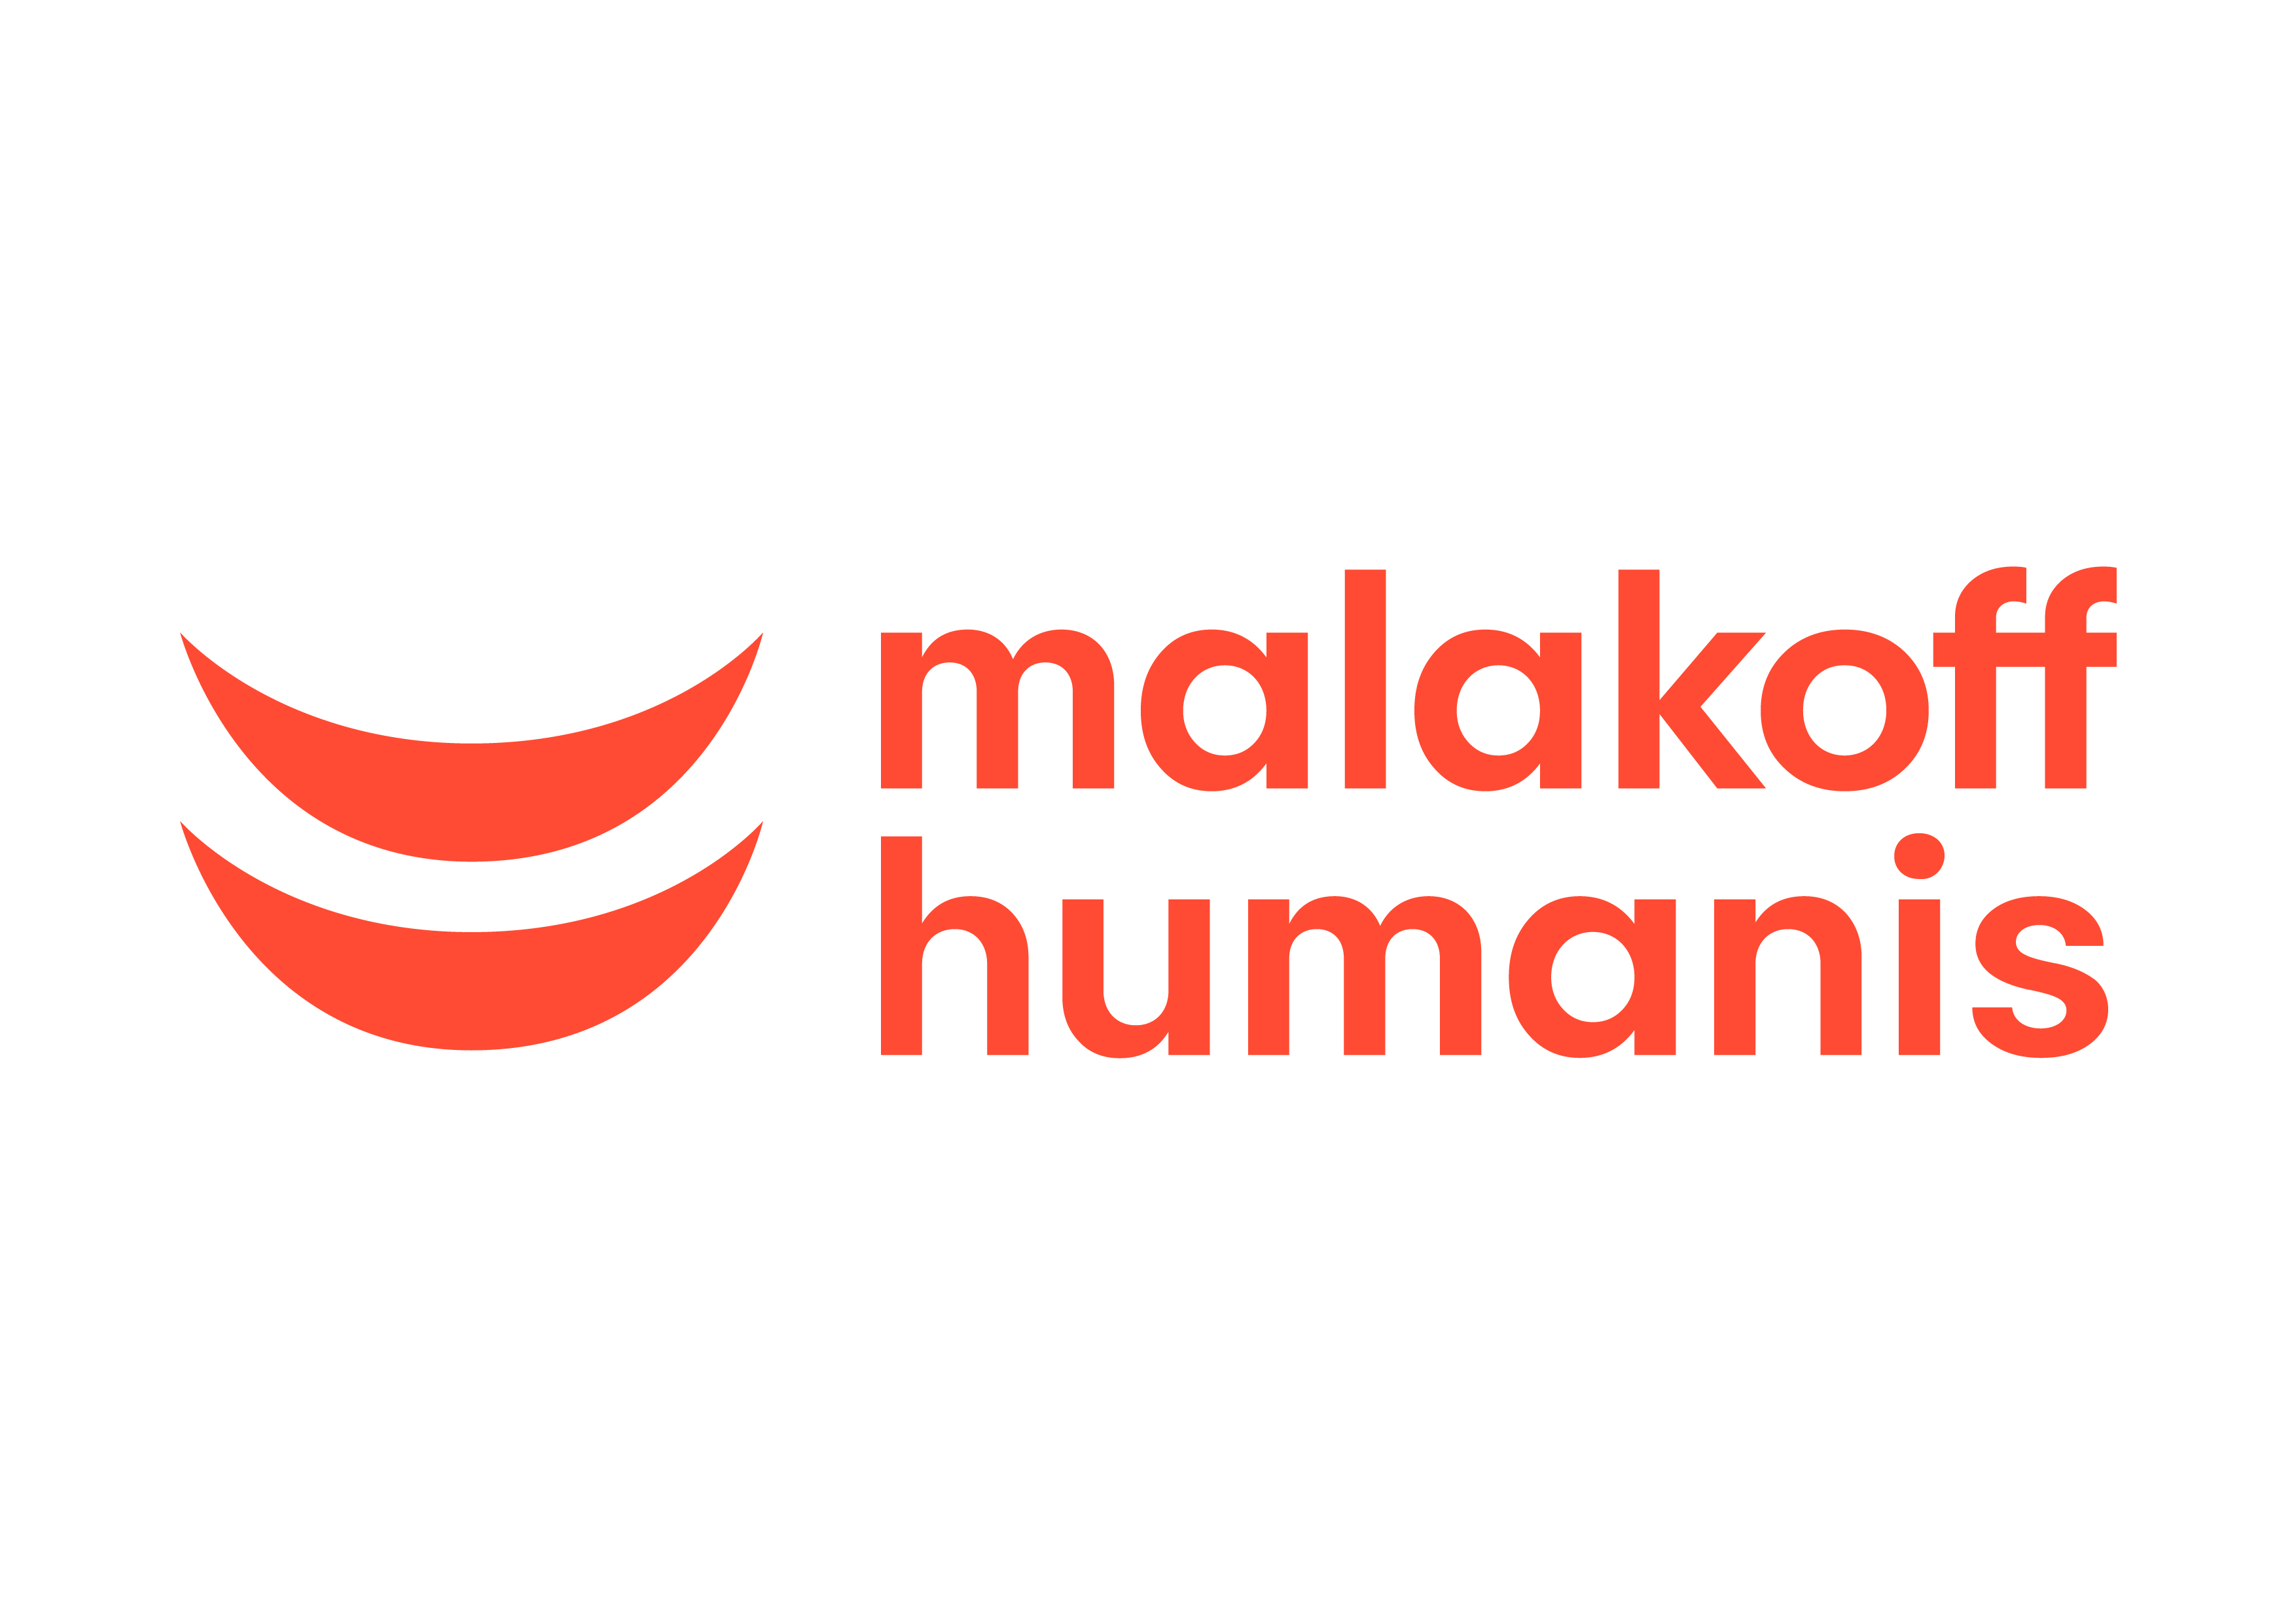 MALAKOFF  HUMANIS